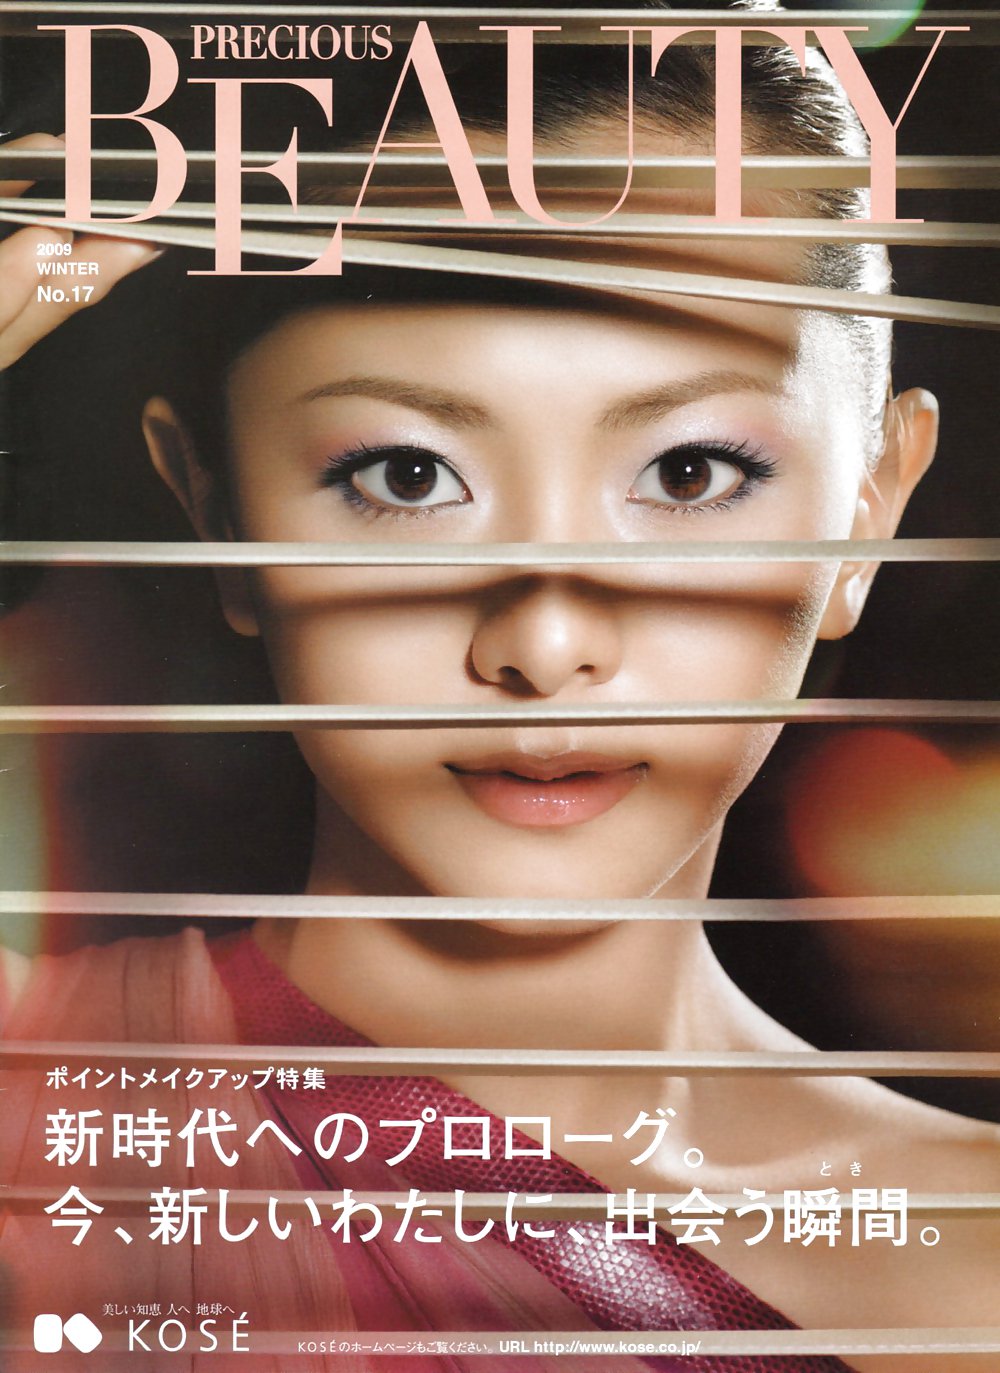 日本のパンフレットに載っているセクシーな女性たち (6)
 #3679396